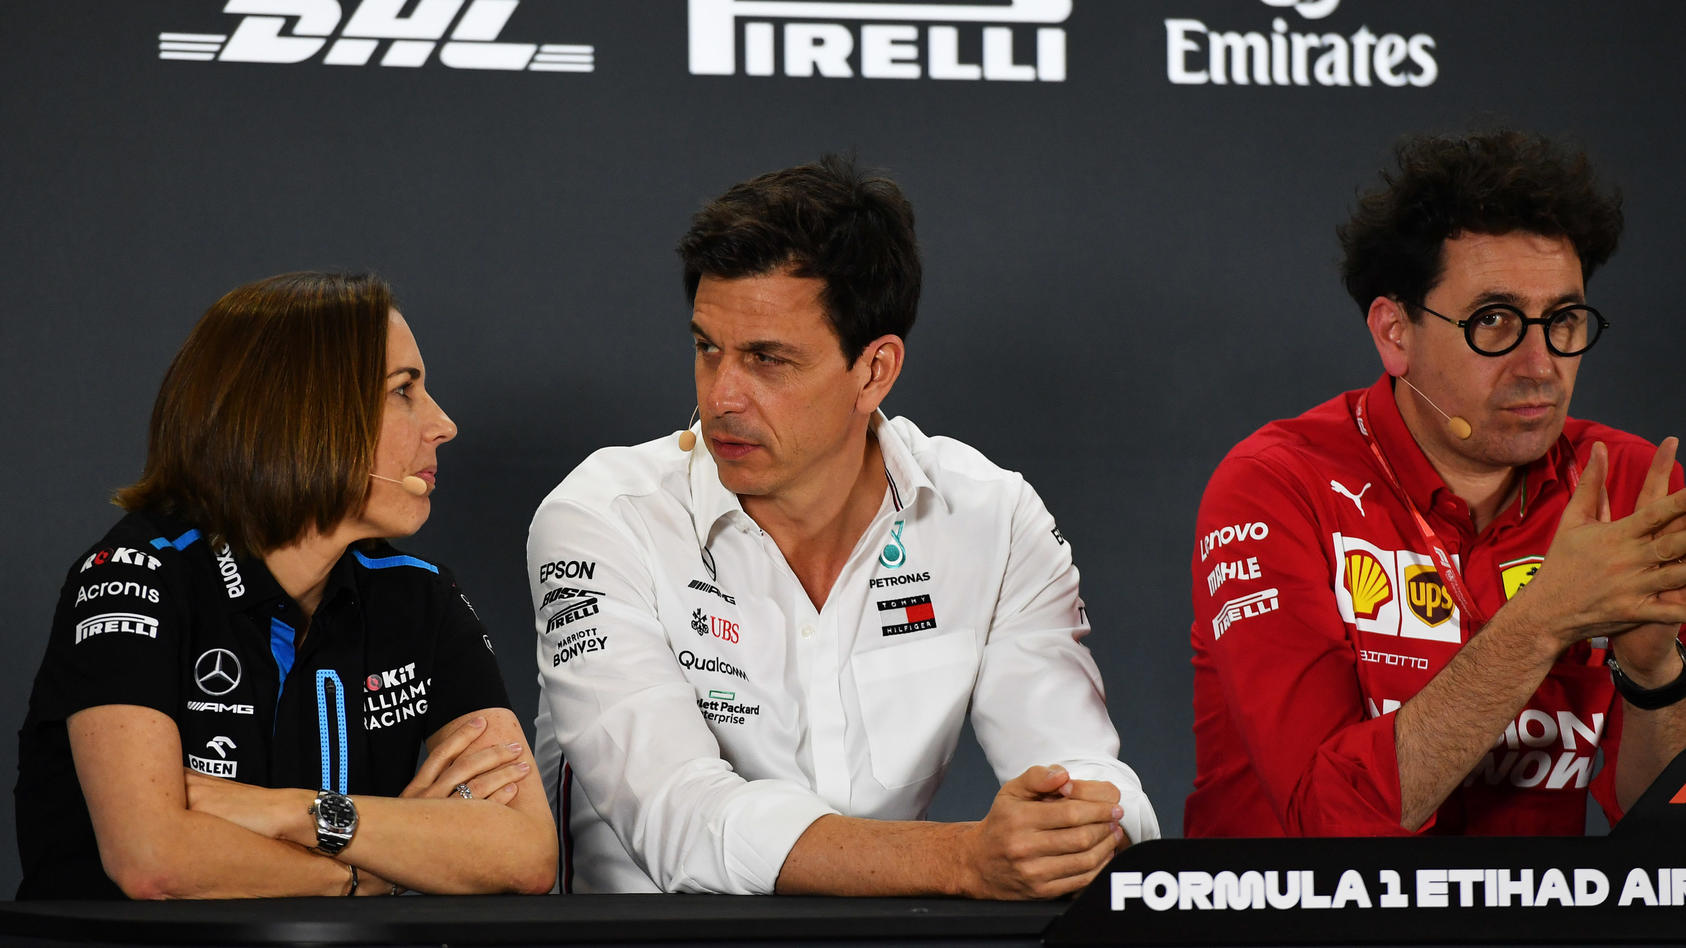 Die FIA will den sieben Ferrari-Konkurrenten um Mercedes und Williams weiterhin keine Informationen zum Schummel-Deal mit den Roten preisgeben.